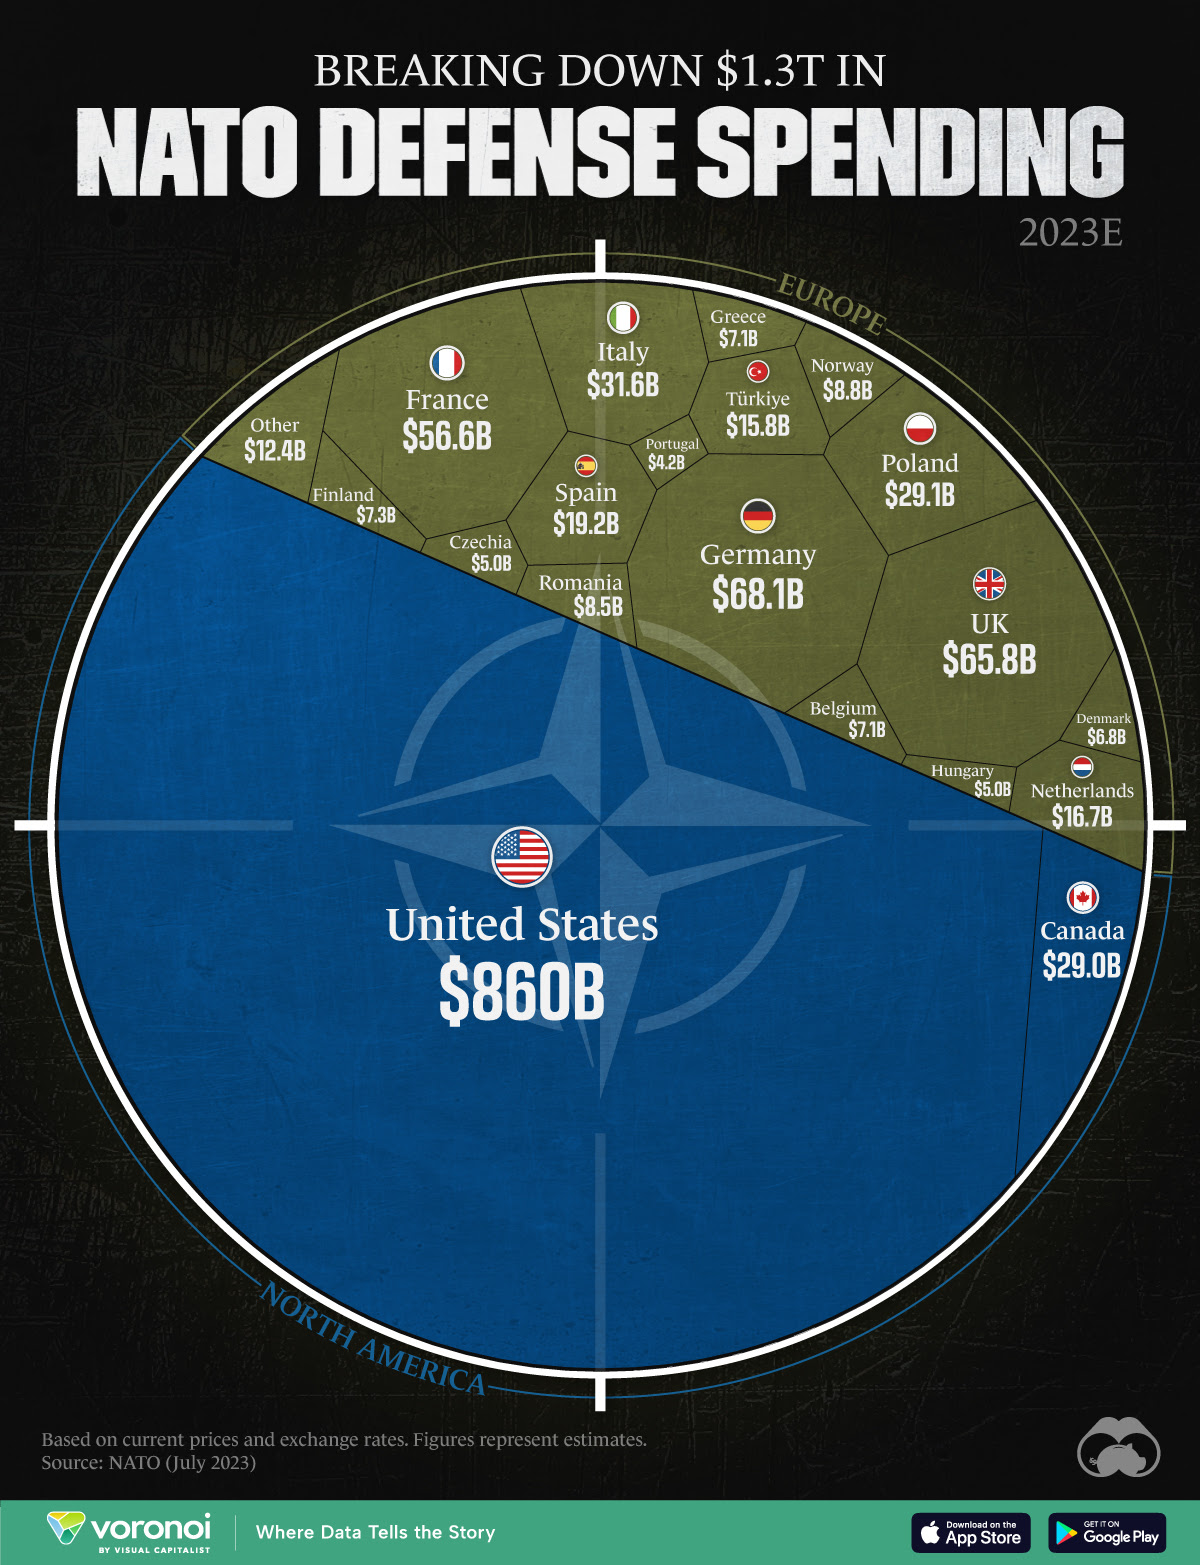 Desglose del gasto en defensa de los países de la OTAN en 2023